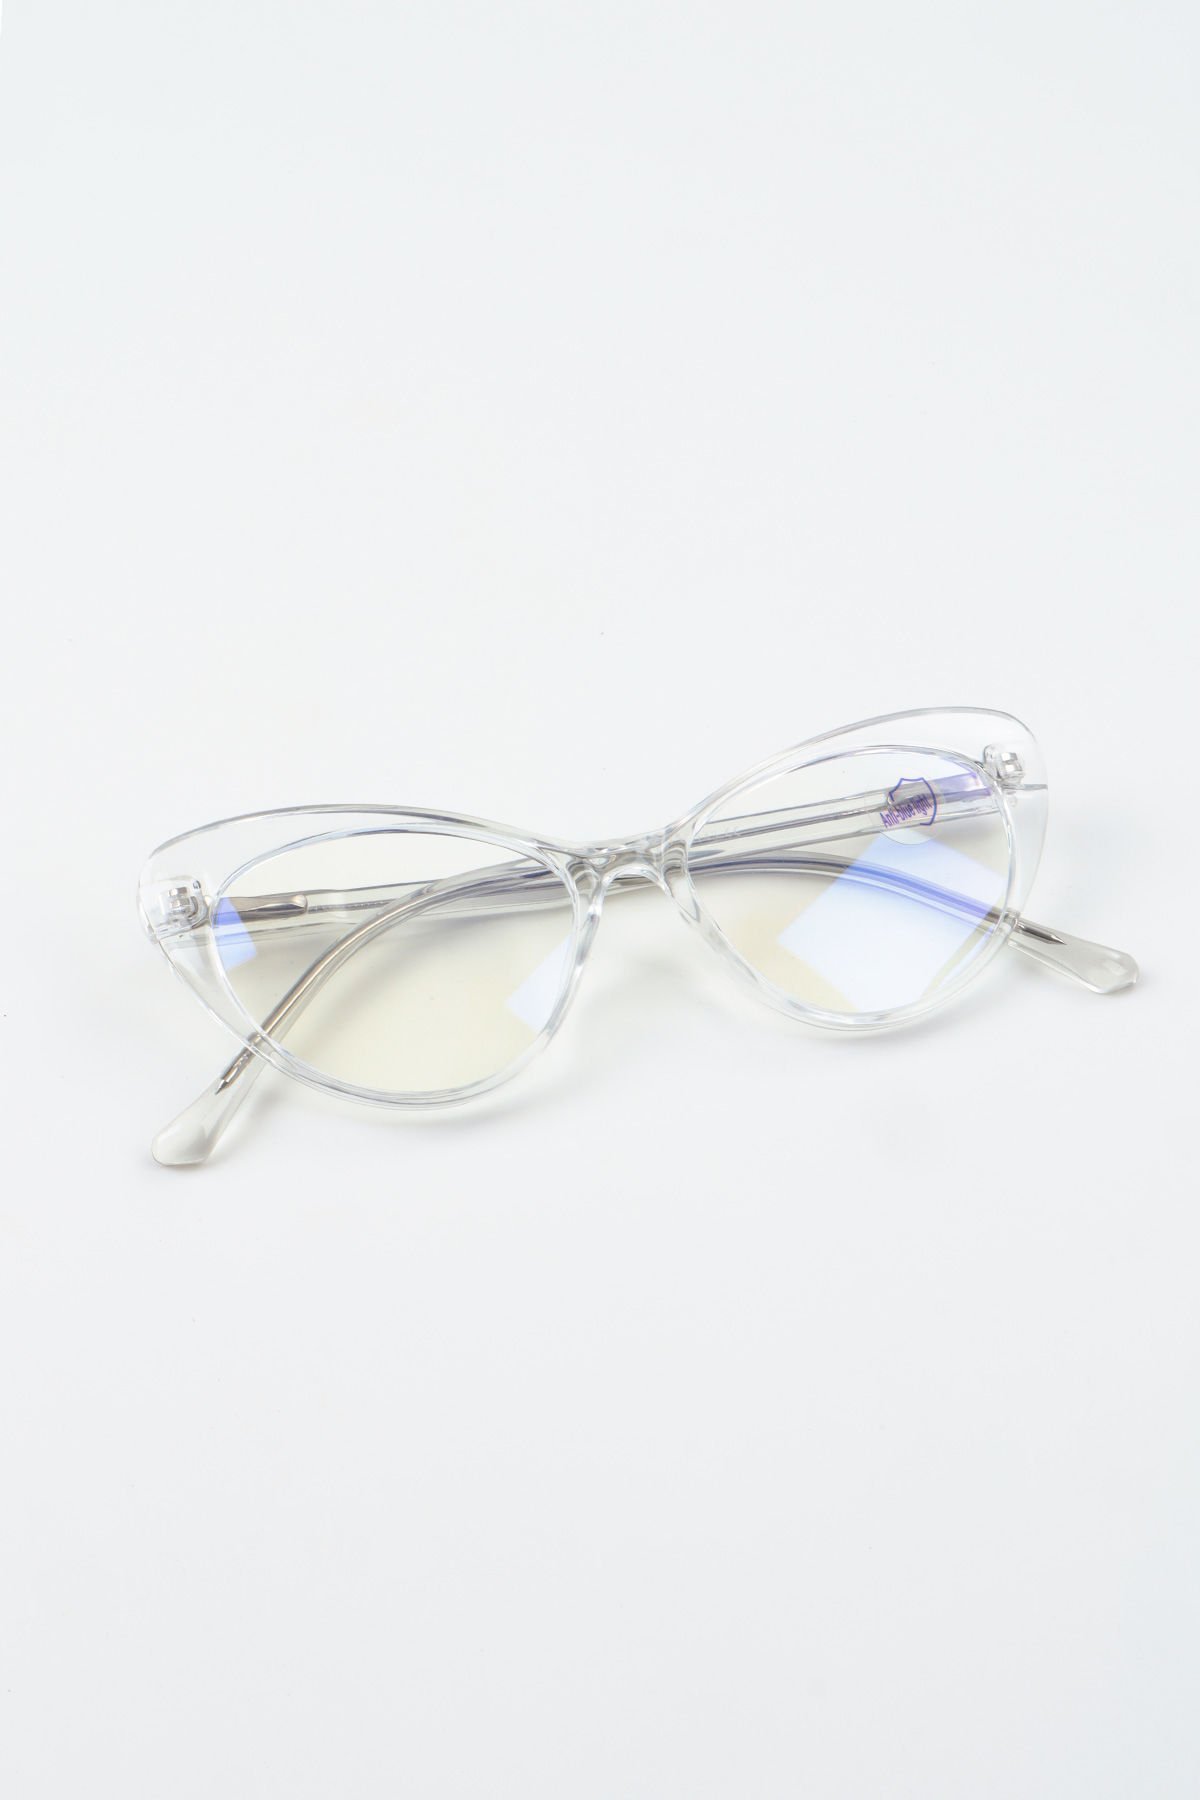 Geraldine Cateye Mavi Işık Filtreli Koruyucu Gözlük - Şeffaf Çerçeve Blue block Cam